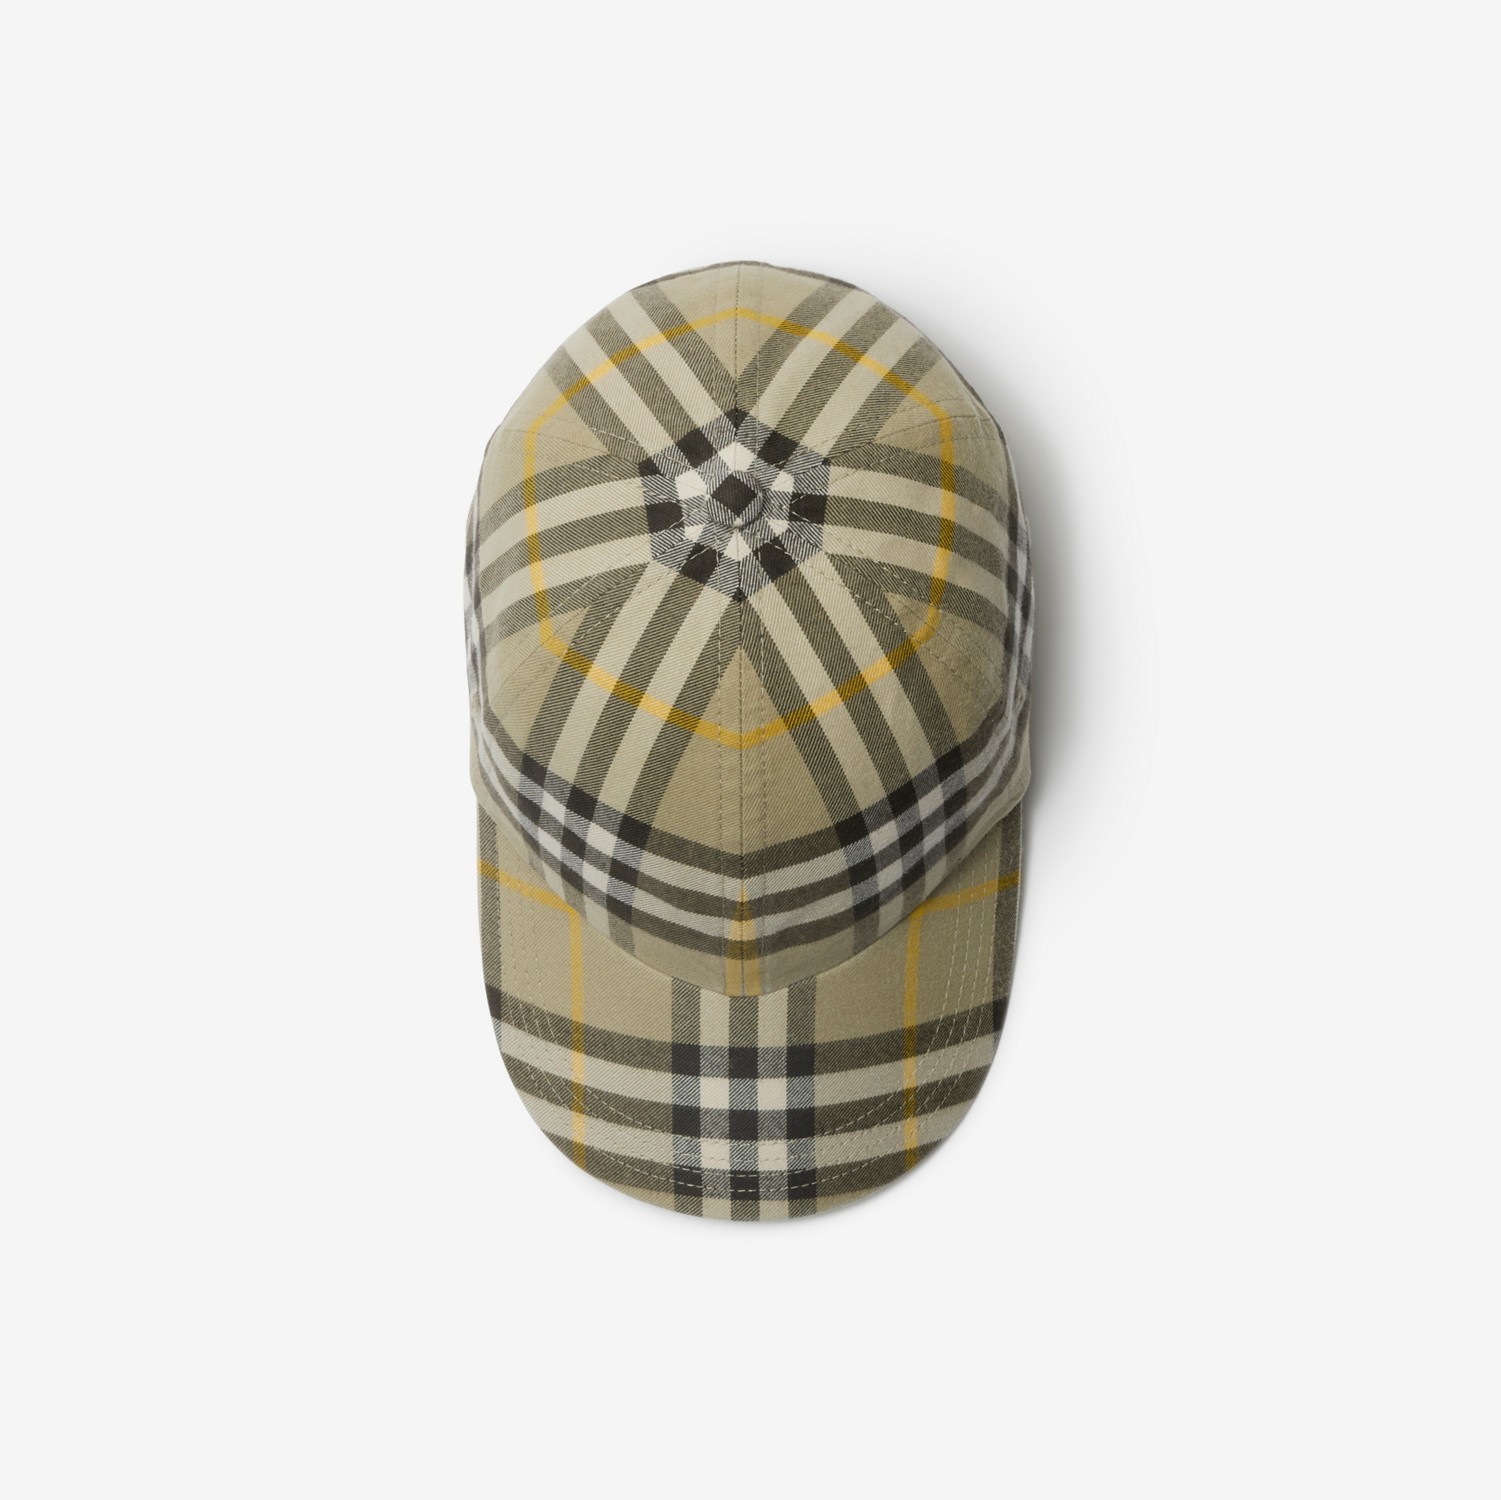 格纹棉质棒球帽 (猎户米) | Burberry® 博柏利官网